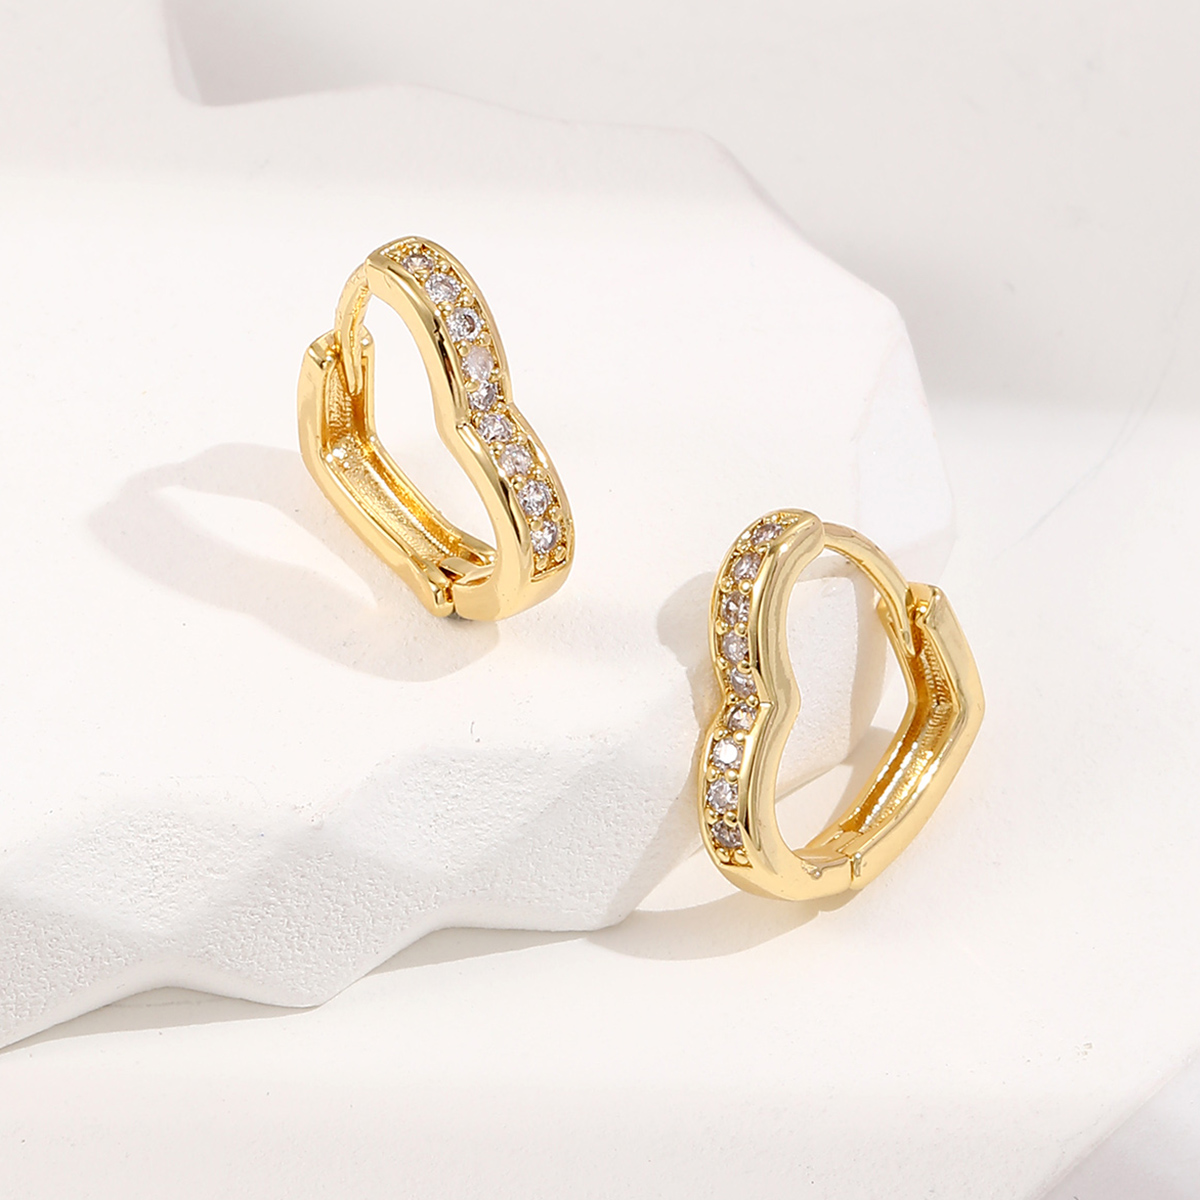 10 Pairs - Love Heart Zircon Crystals Hoop Huggie Gold Plated Earrings|GCJ386|UK SELLER